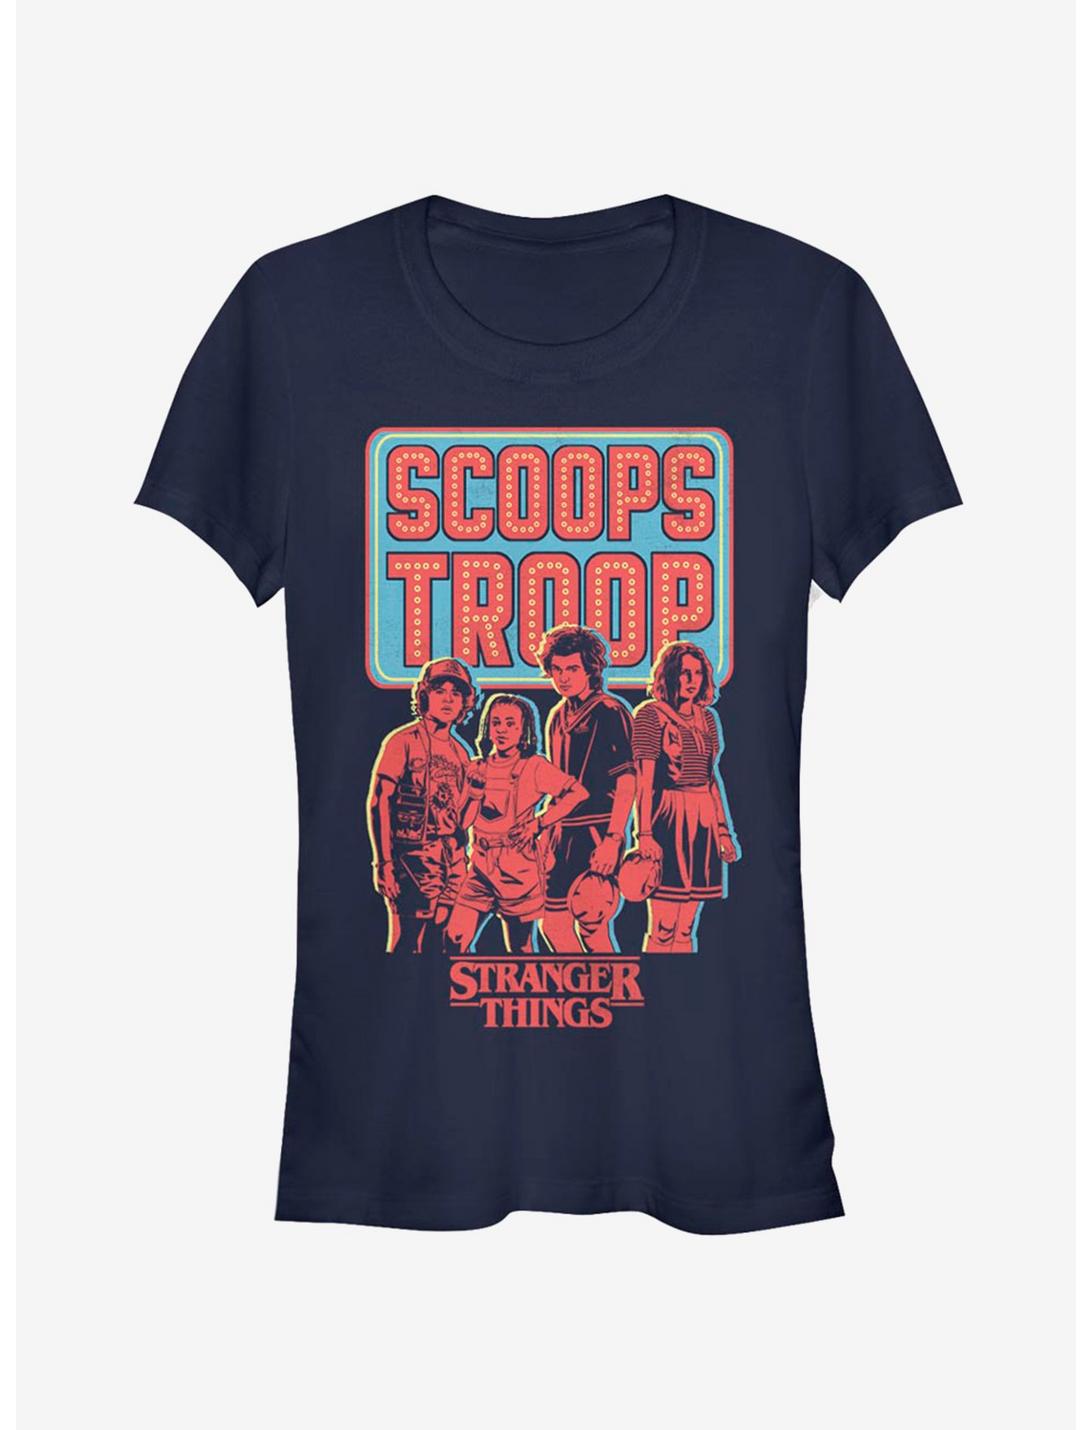 Stranger Things Scoops Troop In Red Girls T-Shirt, NAVY, hi-res